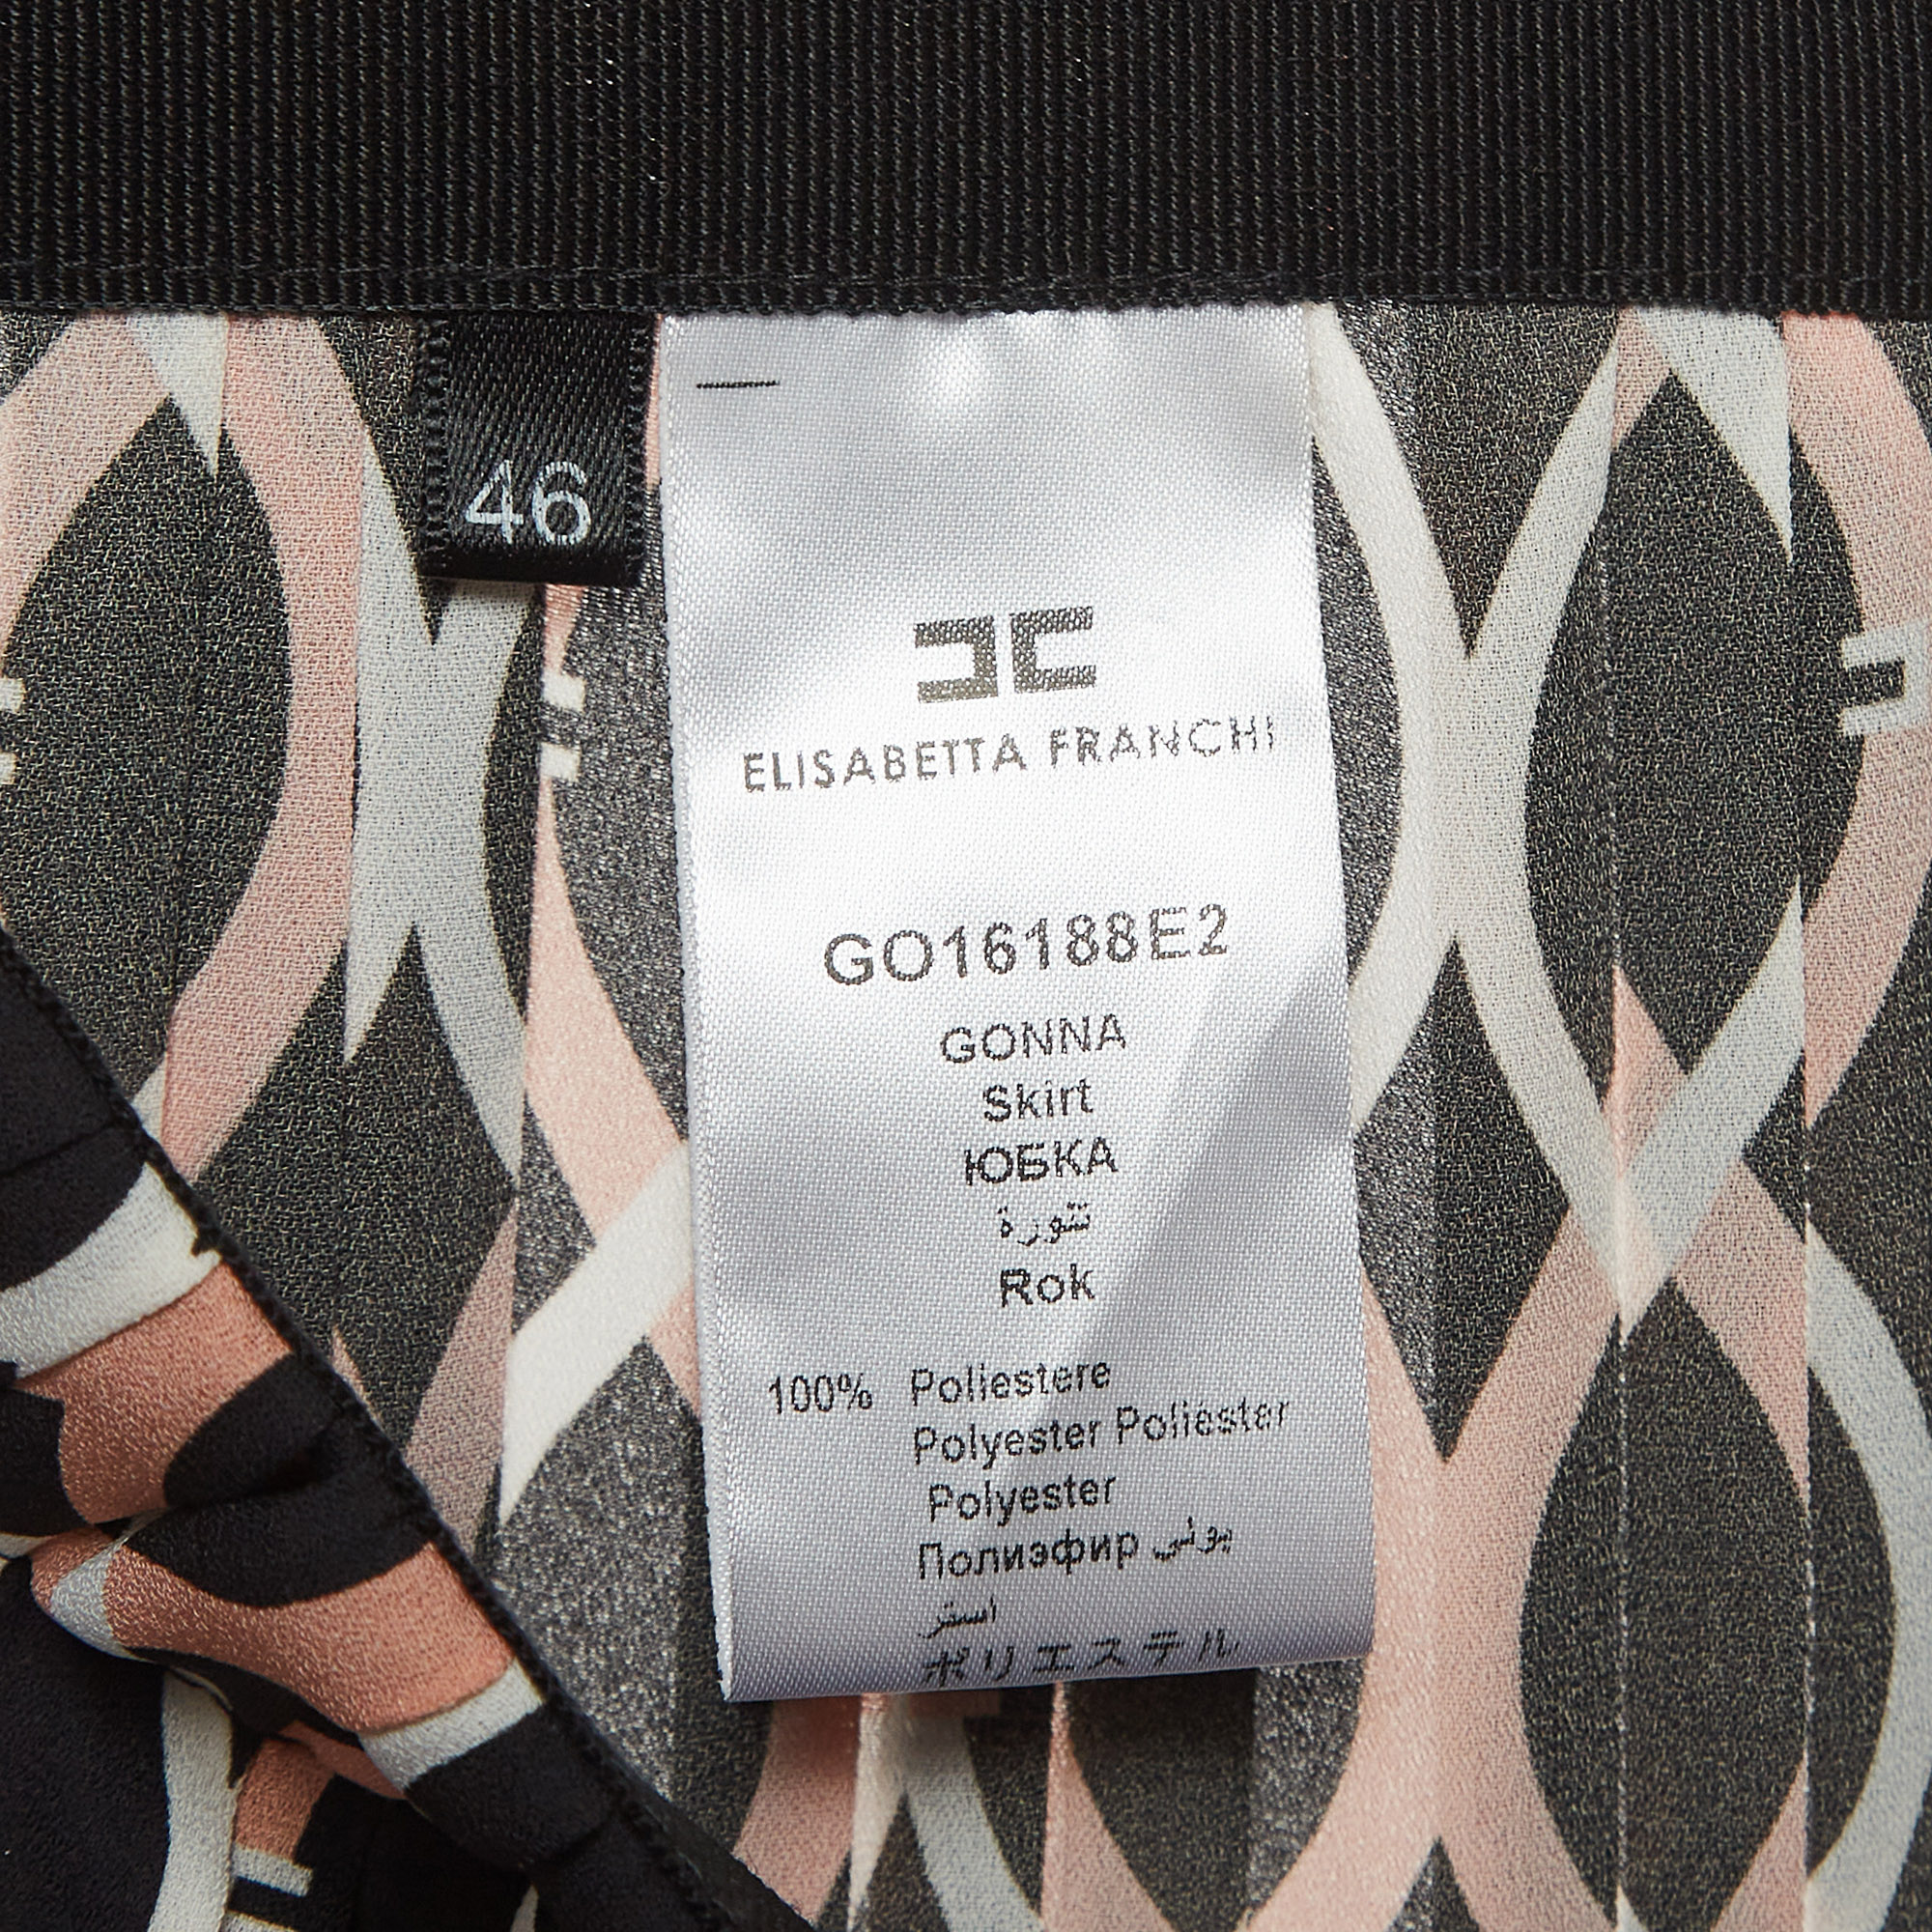 Elisabetta Franchi Black/Beige Printed Pleated Crepe Midi Skirt L